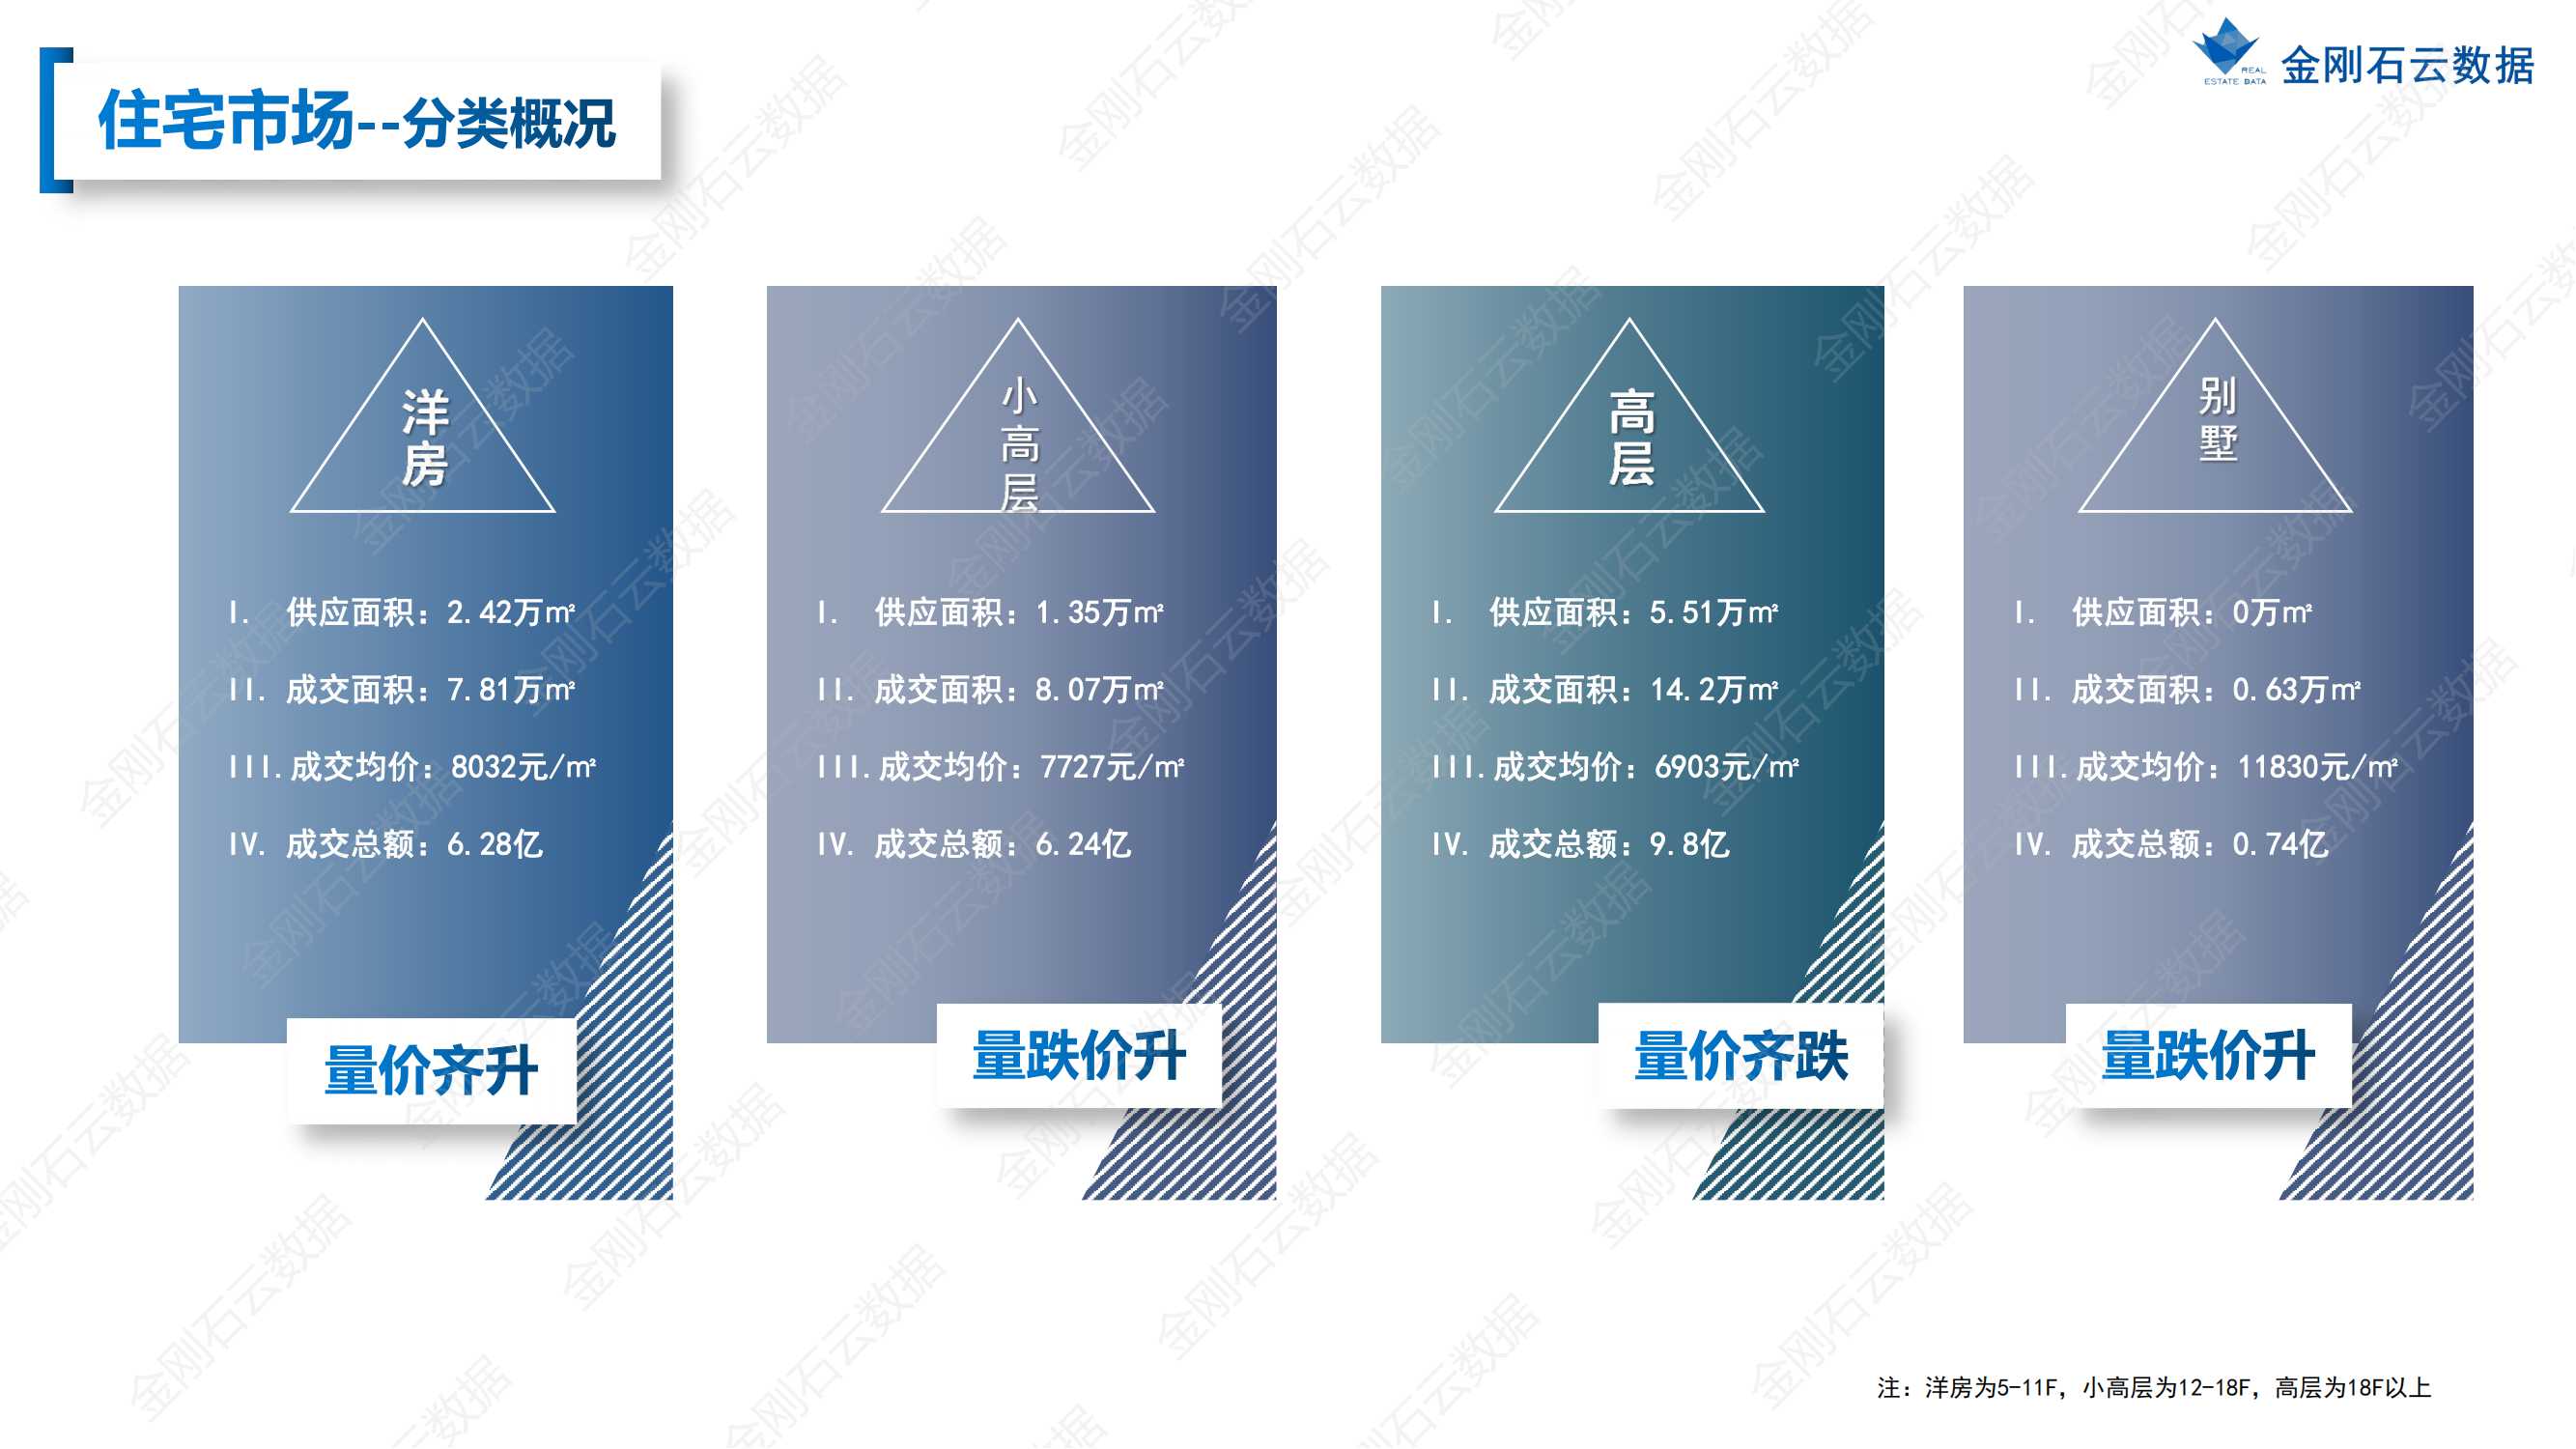 【江苏徐州】2022年7月市场总结(图33)